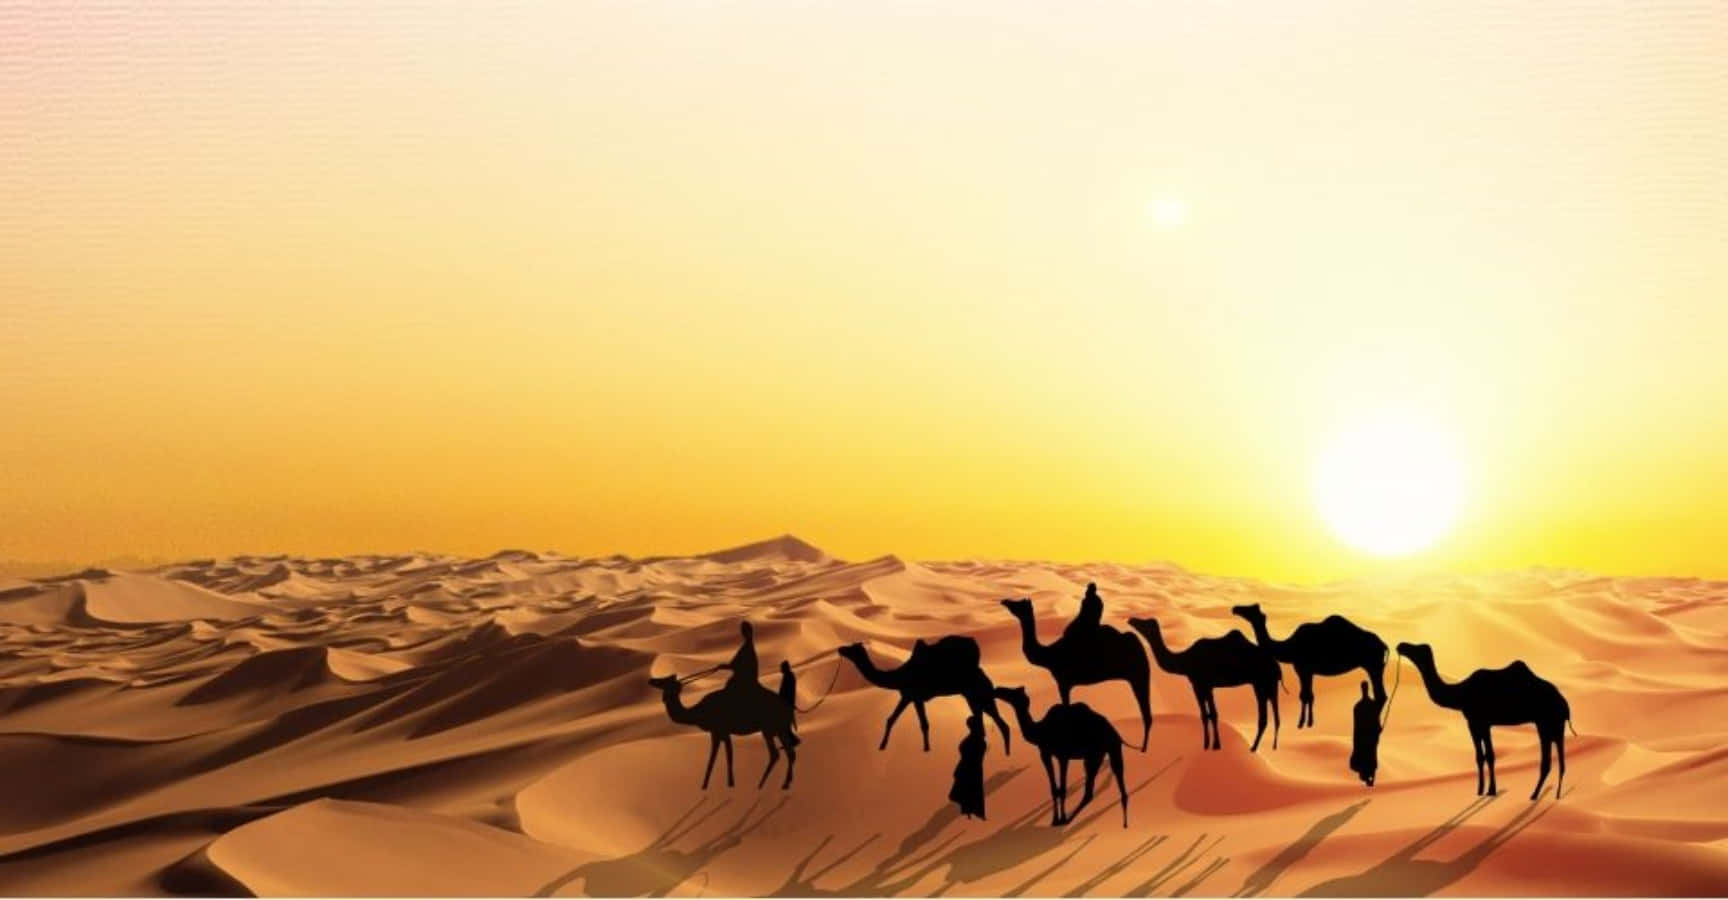 Ungrupo De Camellos Caminando En El Desierto Al Atardecer